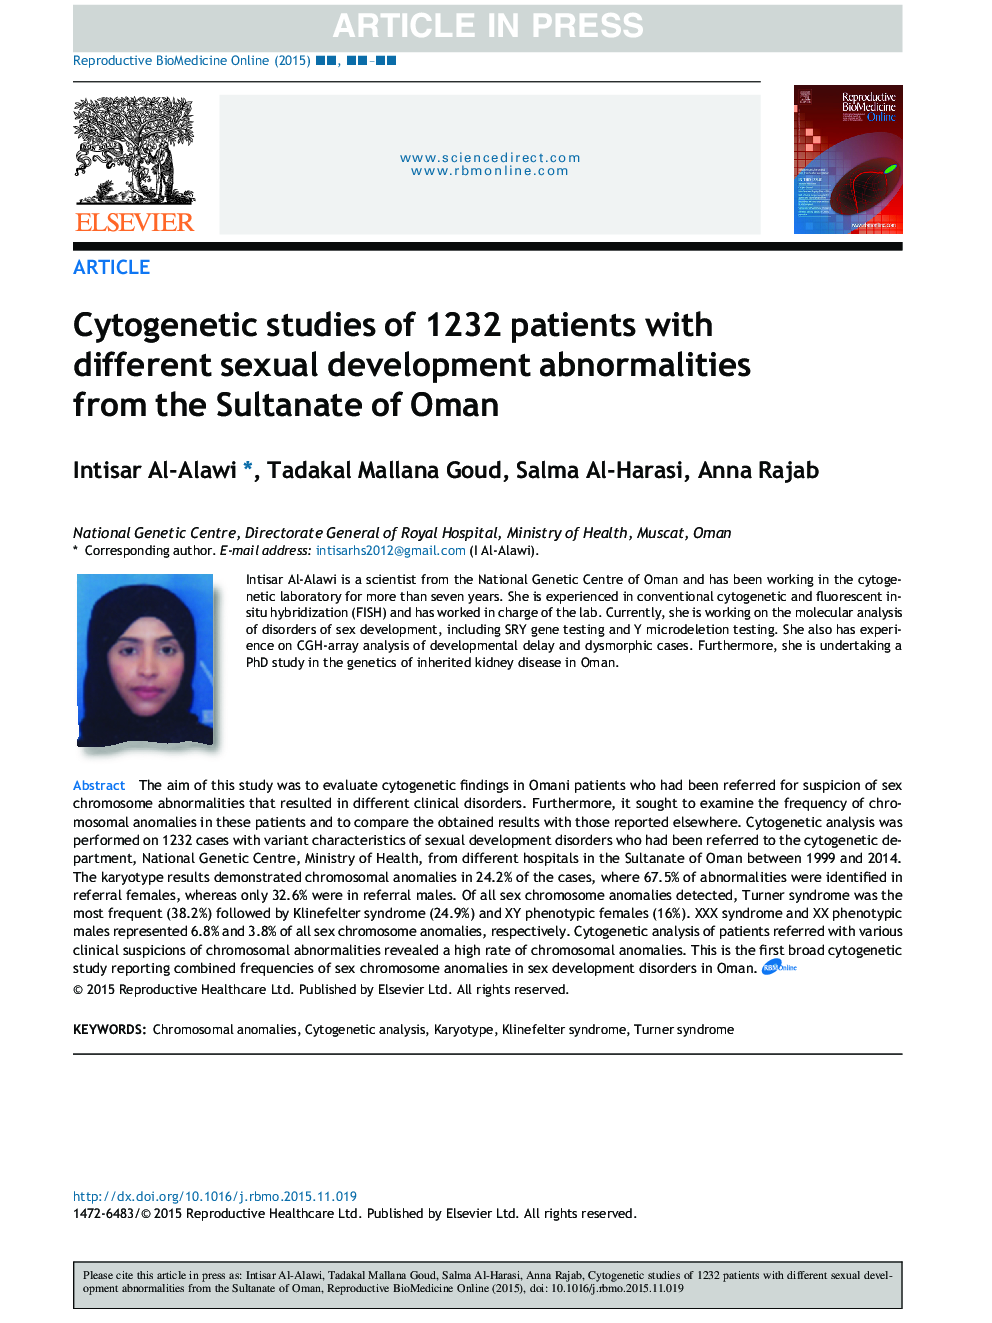 مطالعات سیتوژنتیک 1232 بیمار مبتلا به اختلالات مختلف رشد جنسی از سوی سلطان عمان 